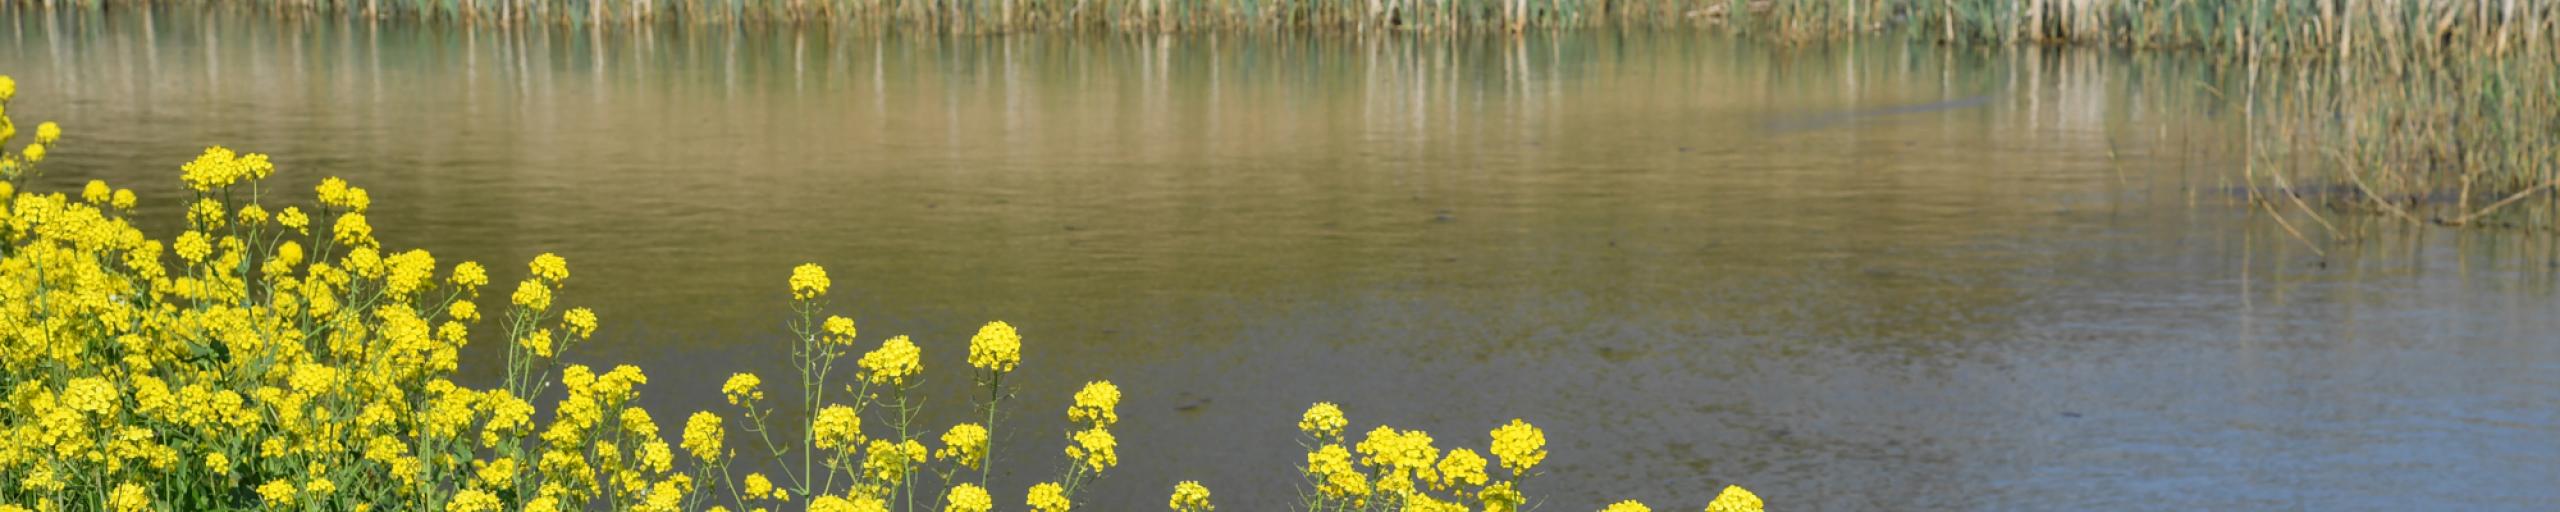 Gele bloemen langs de waterkant